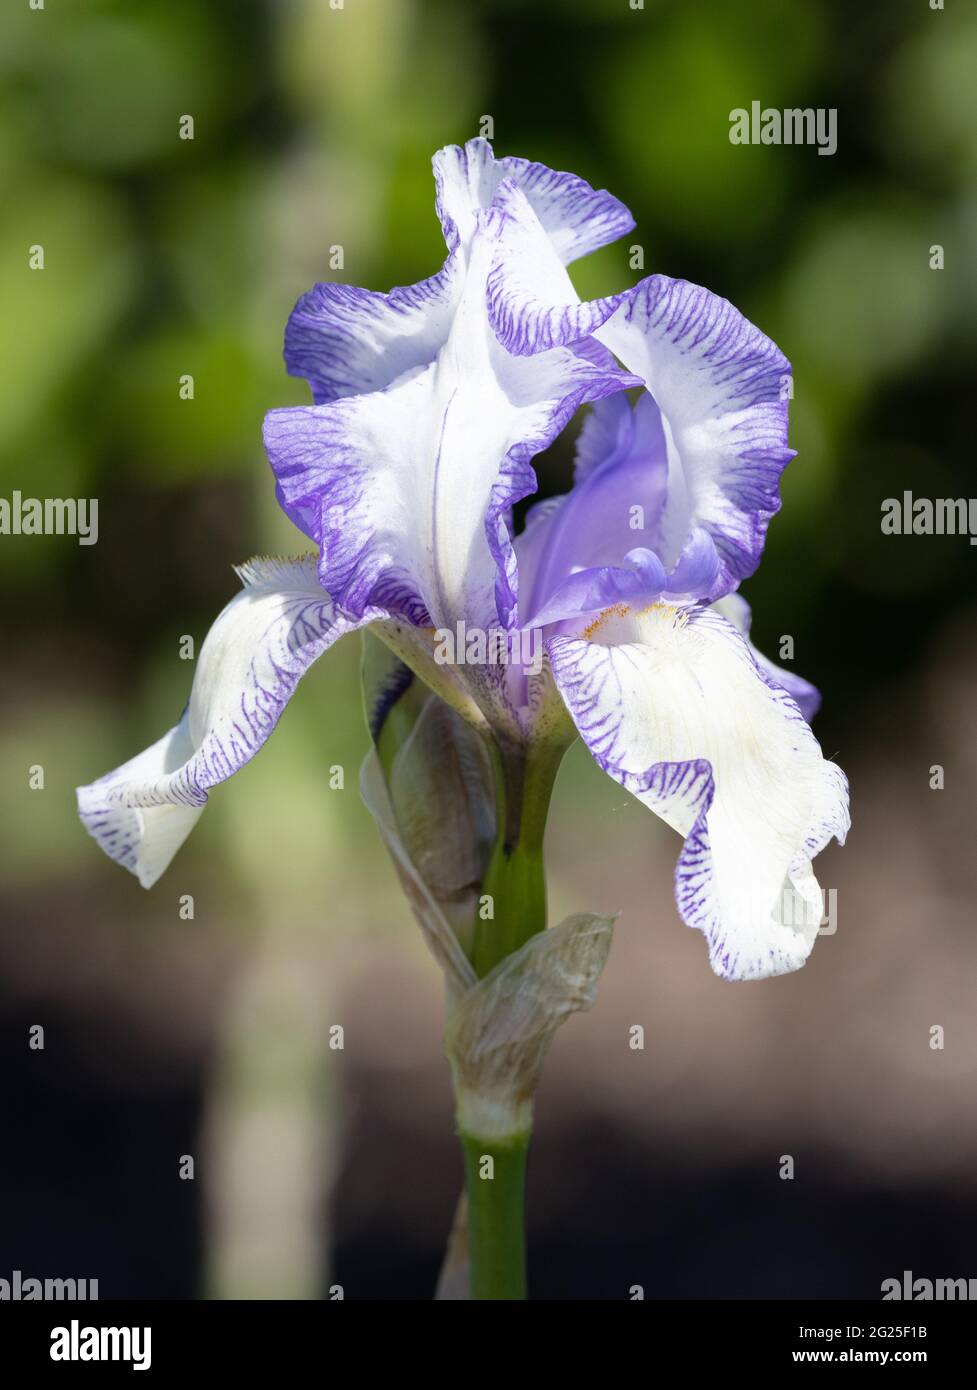 Blaue und weiße Irisblume, Sorte Iris Big Day, blüht im Frühling in einem Garten, Großbritannien Stockfoto